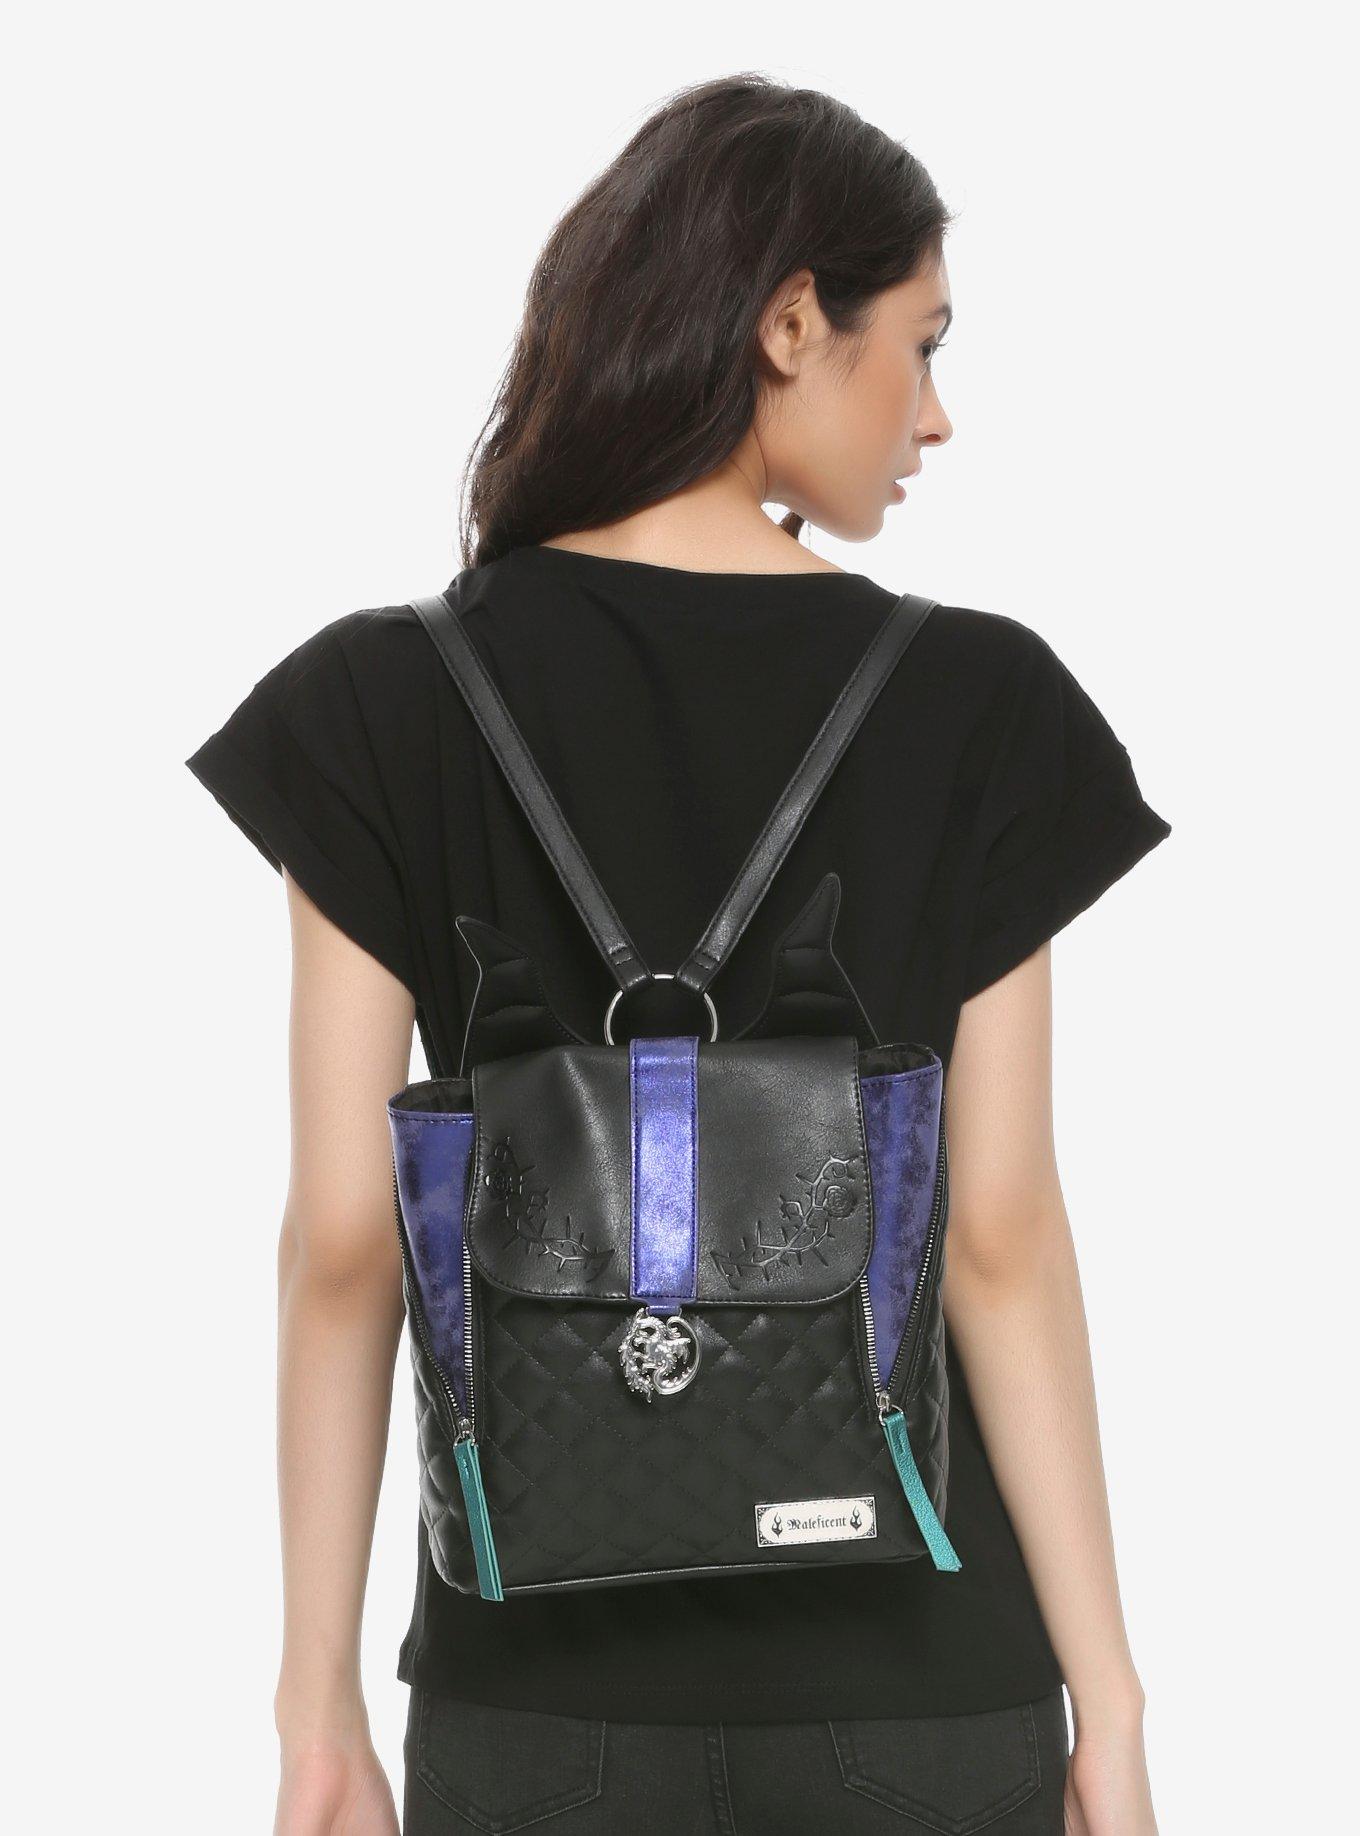 maleficent mini backpack